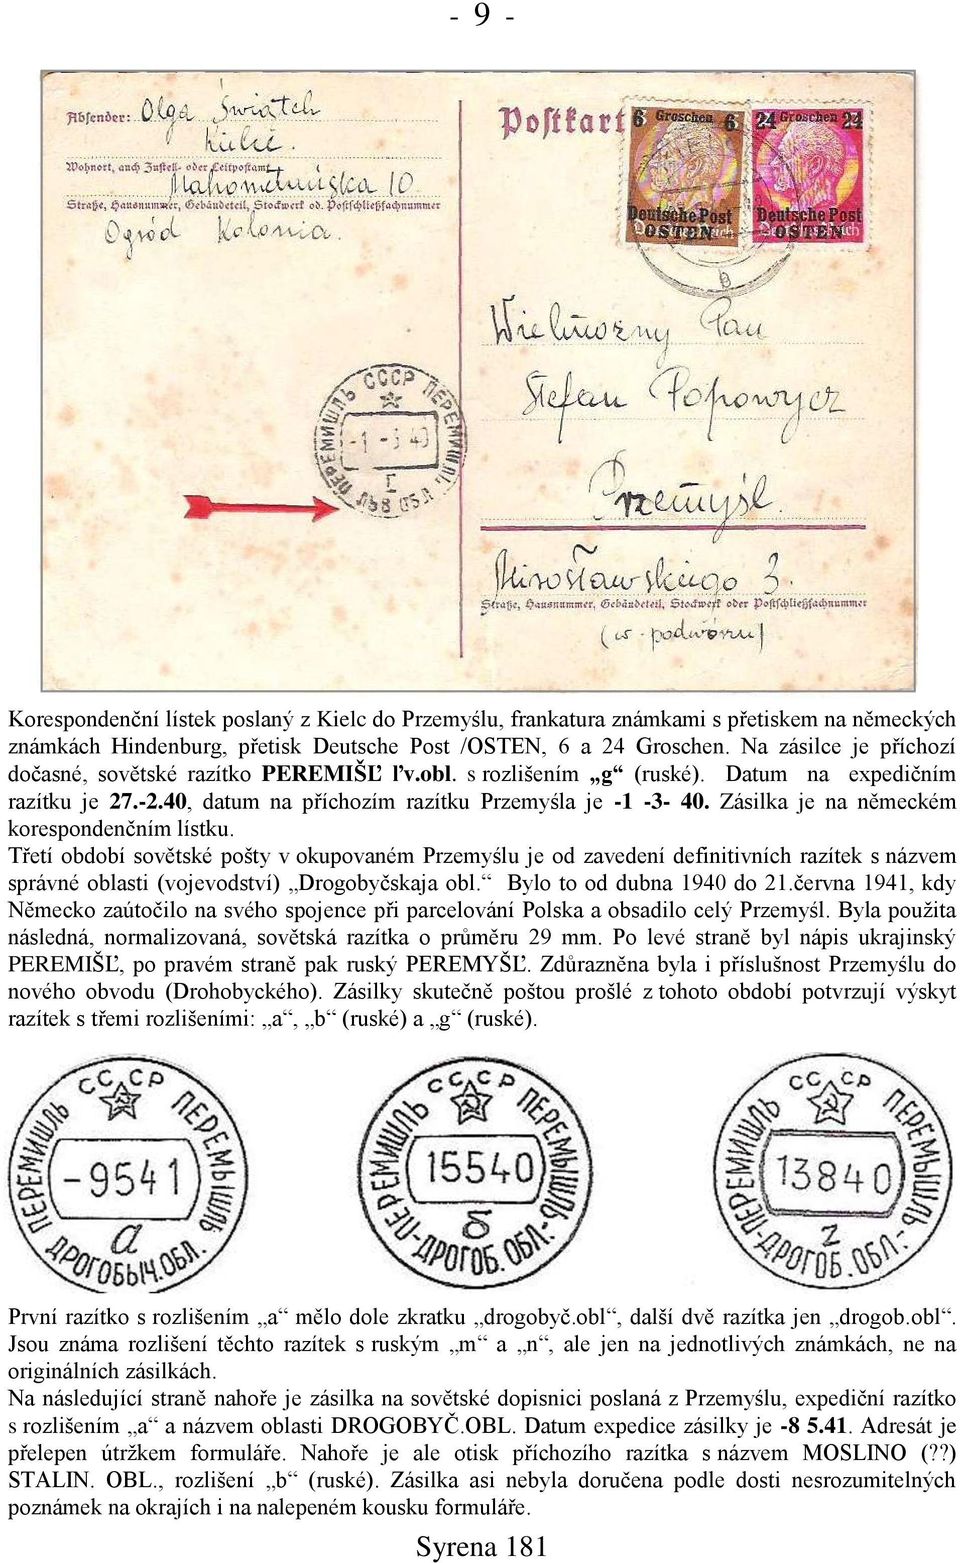 Zásilka je na německém korespondenčním lístku. Třetí období sovětské pońty v okupovaném Przemyślu je od zavedení definitivních razítek s názvem správné oblasti (vojevodství) Drogobyčskaja obl.